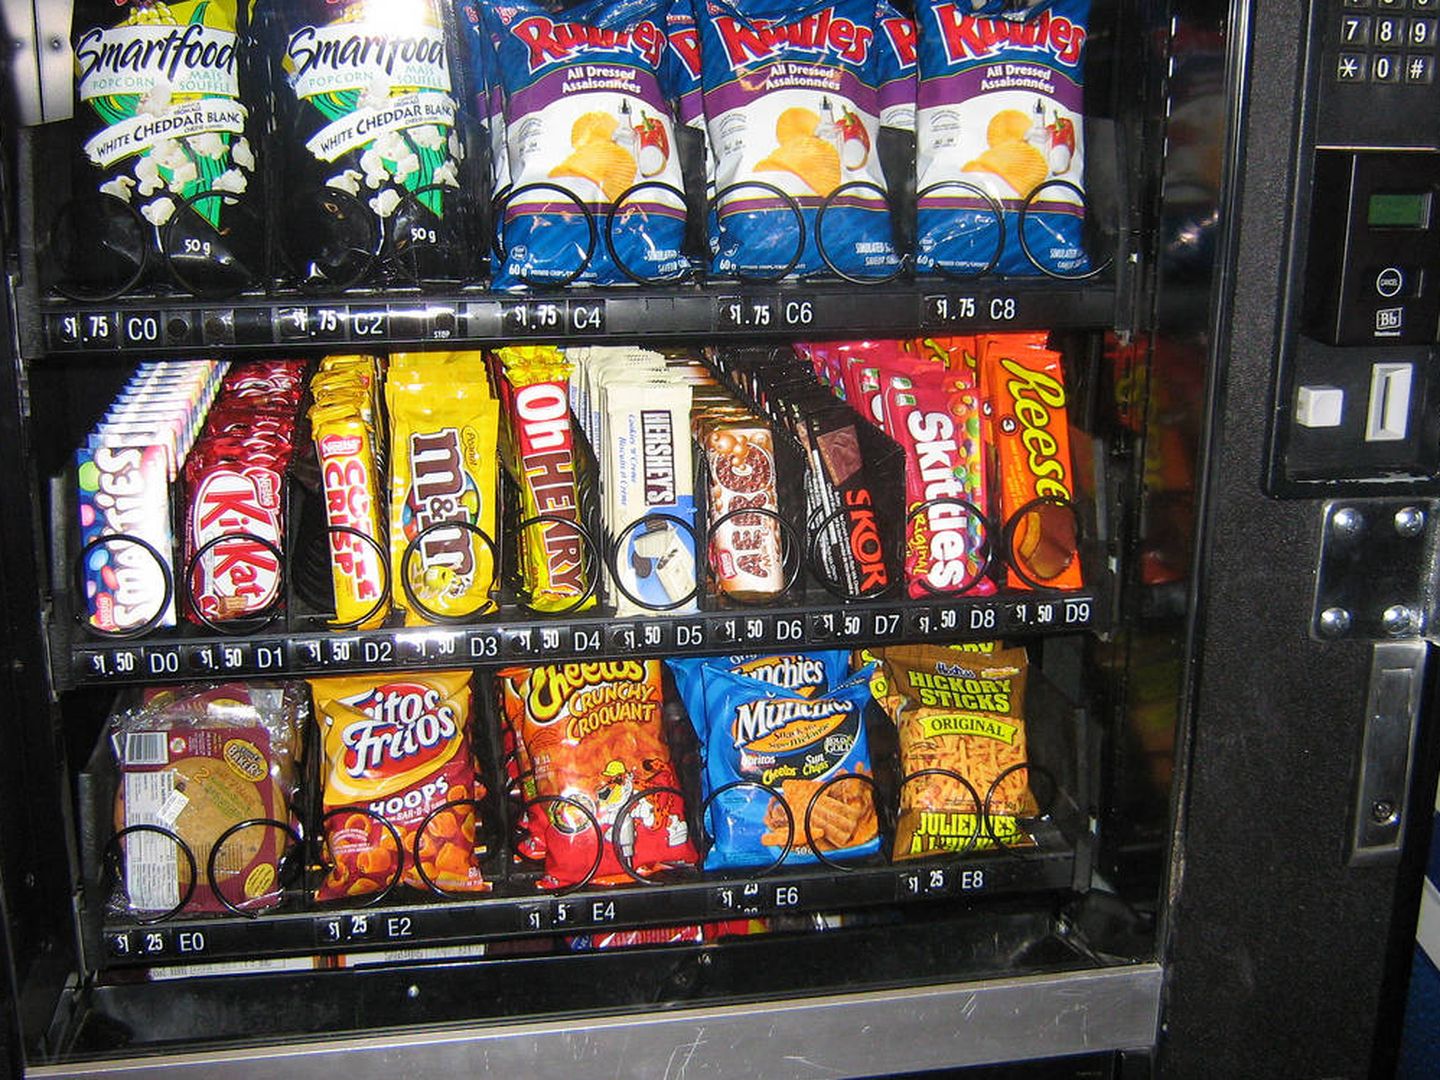 Máquinas de vending